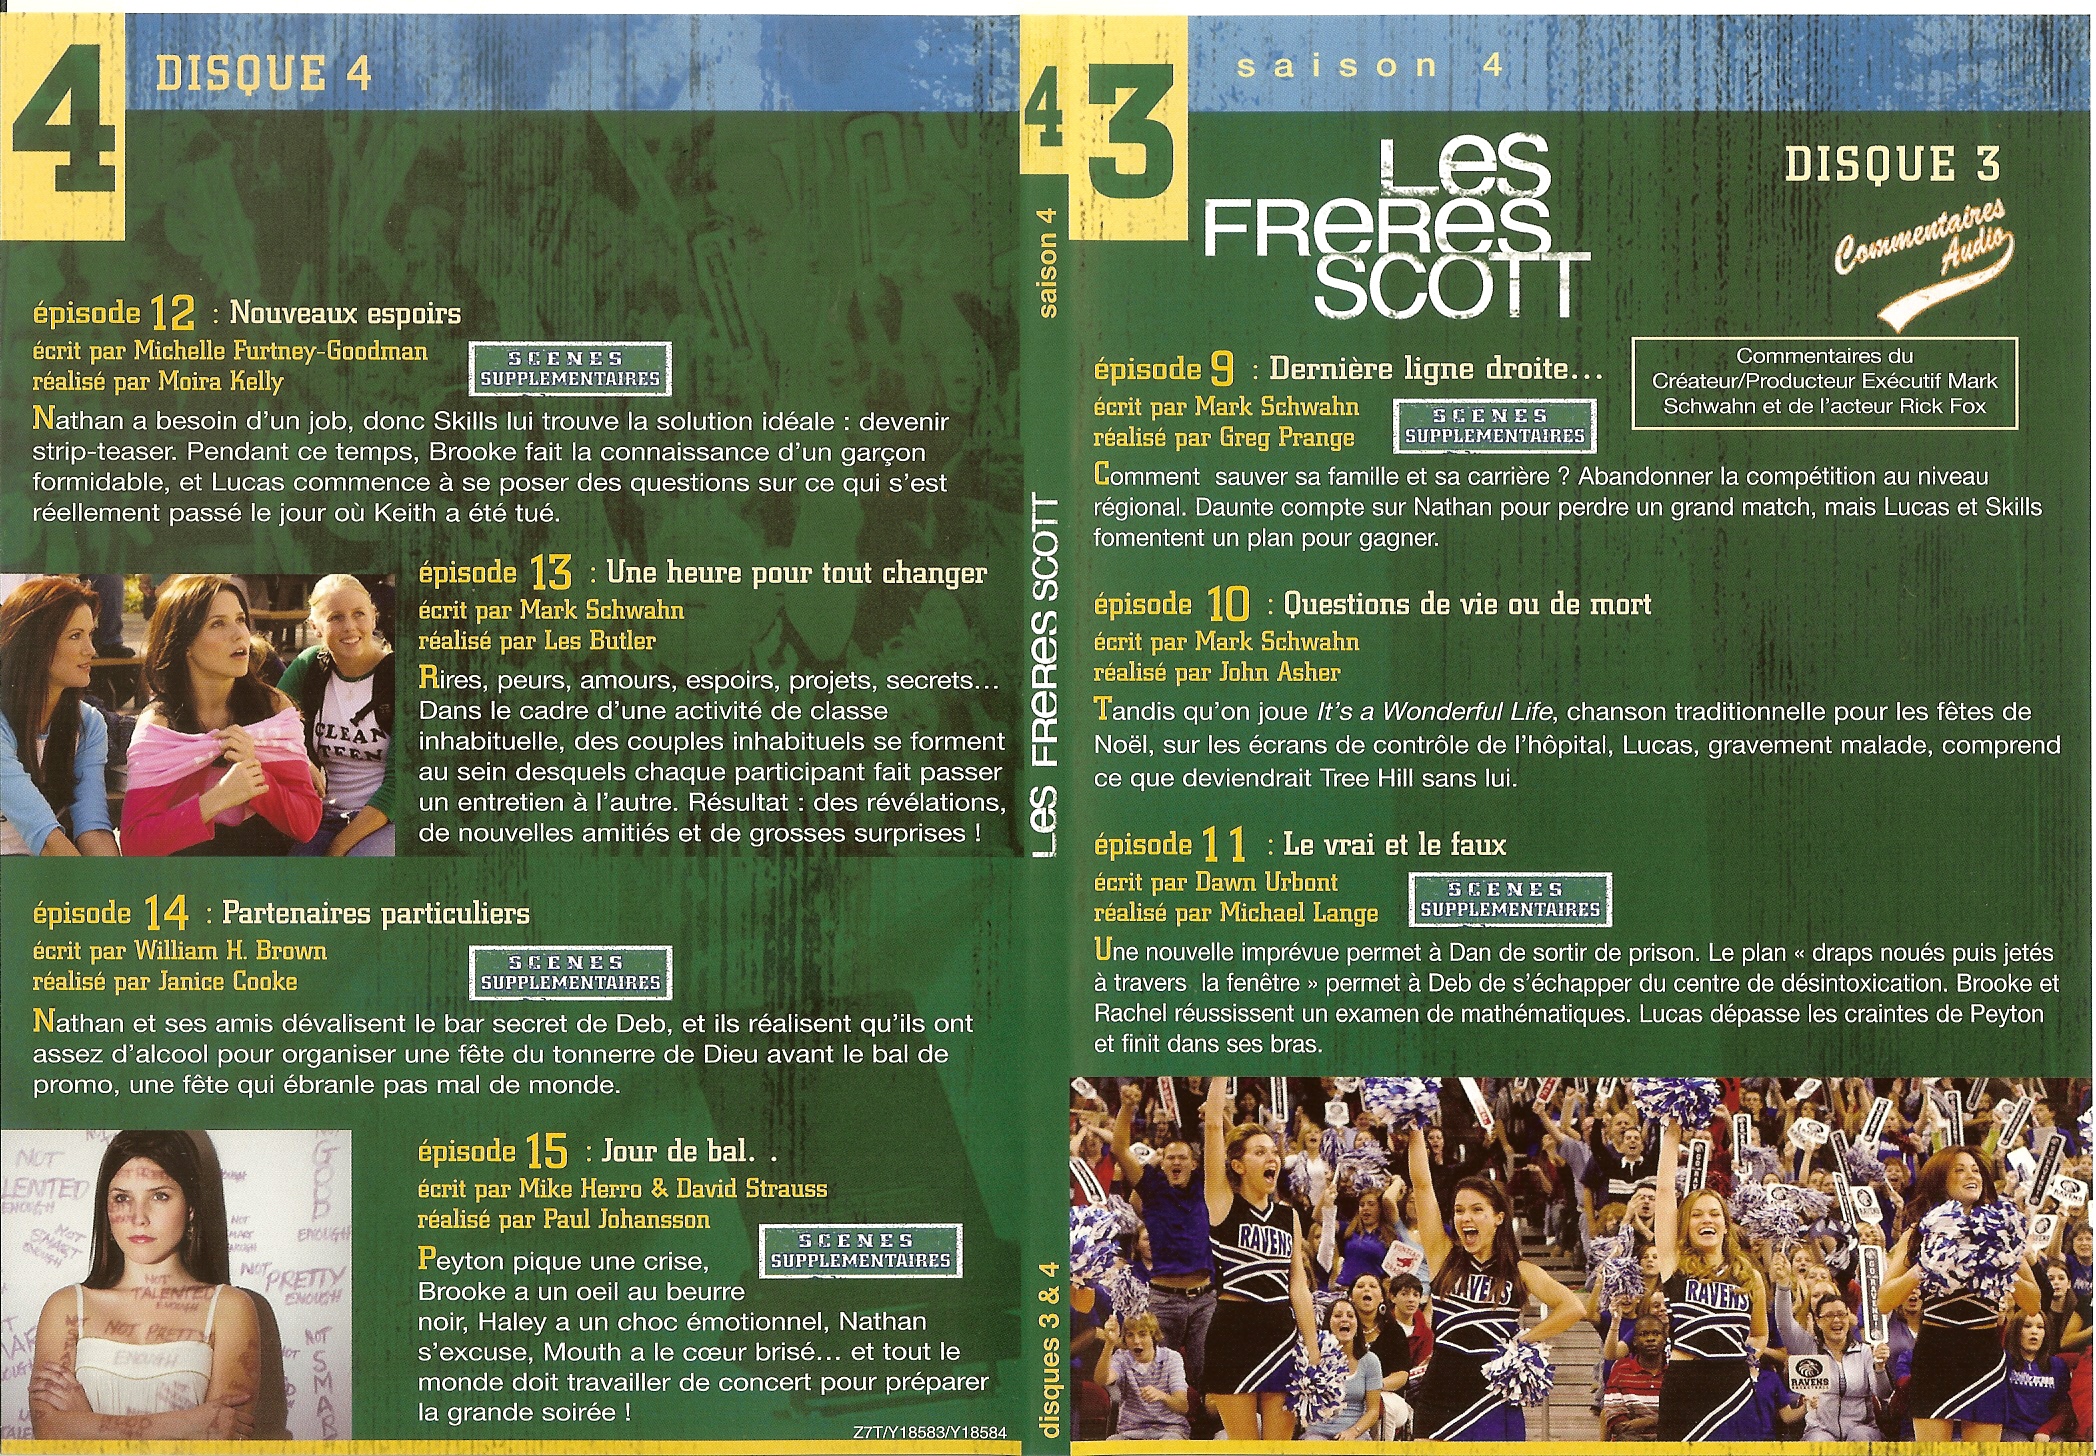 Jaquette DVD Les frres Scott Saison 4 dvd 2